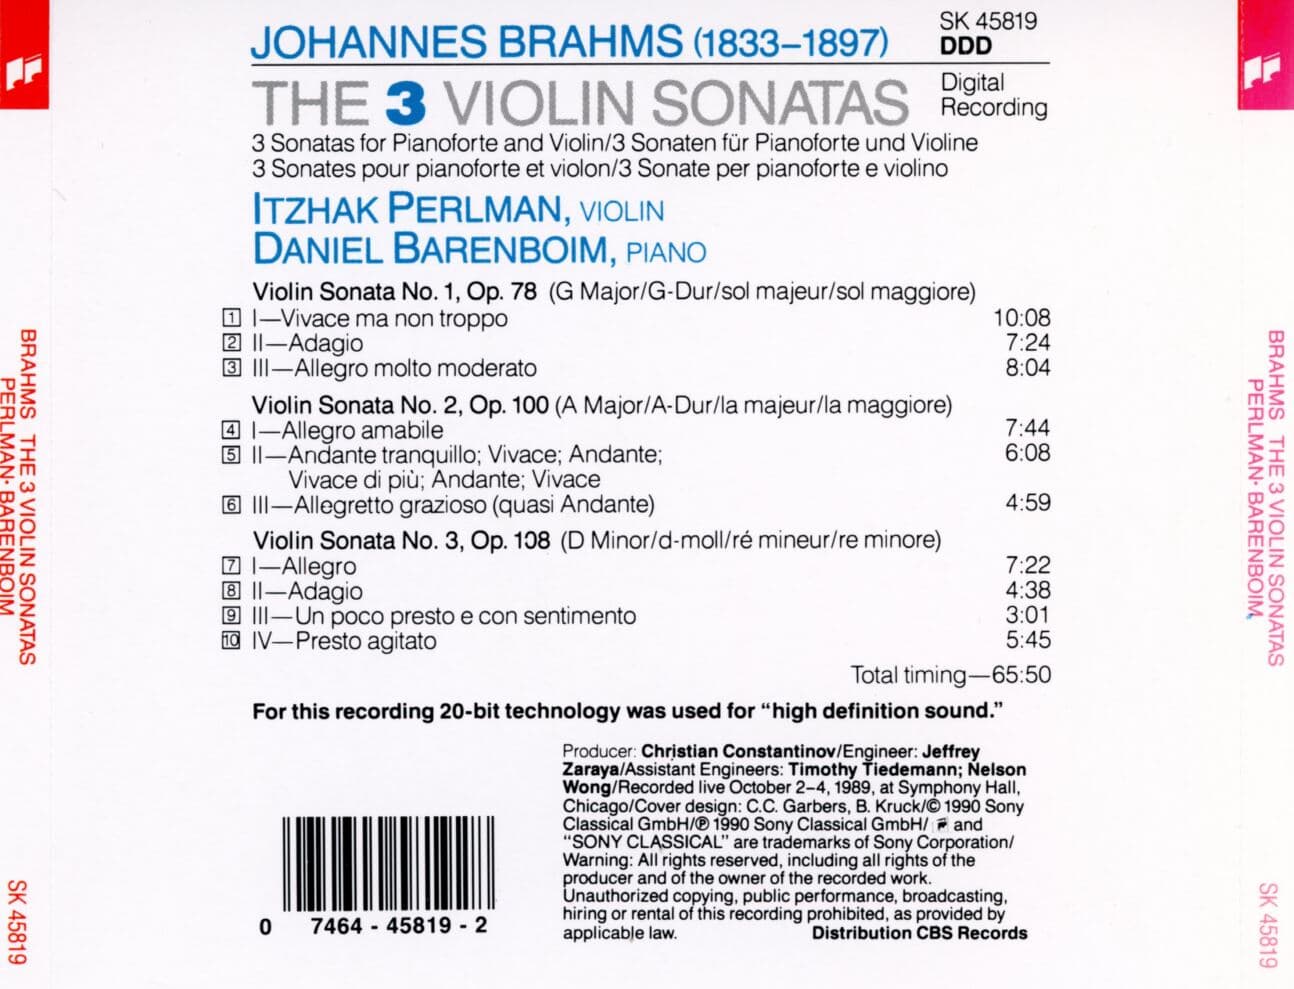 이차크 펄만,다니엘 바렌보임 - Itzhak Perlman,Daniel Barenboim - Brahms The 3 Violin Sonatas [U.S발매]